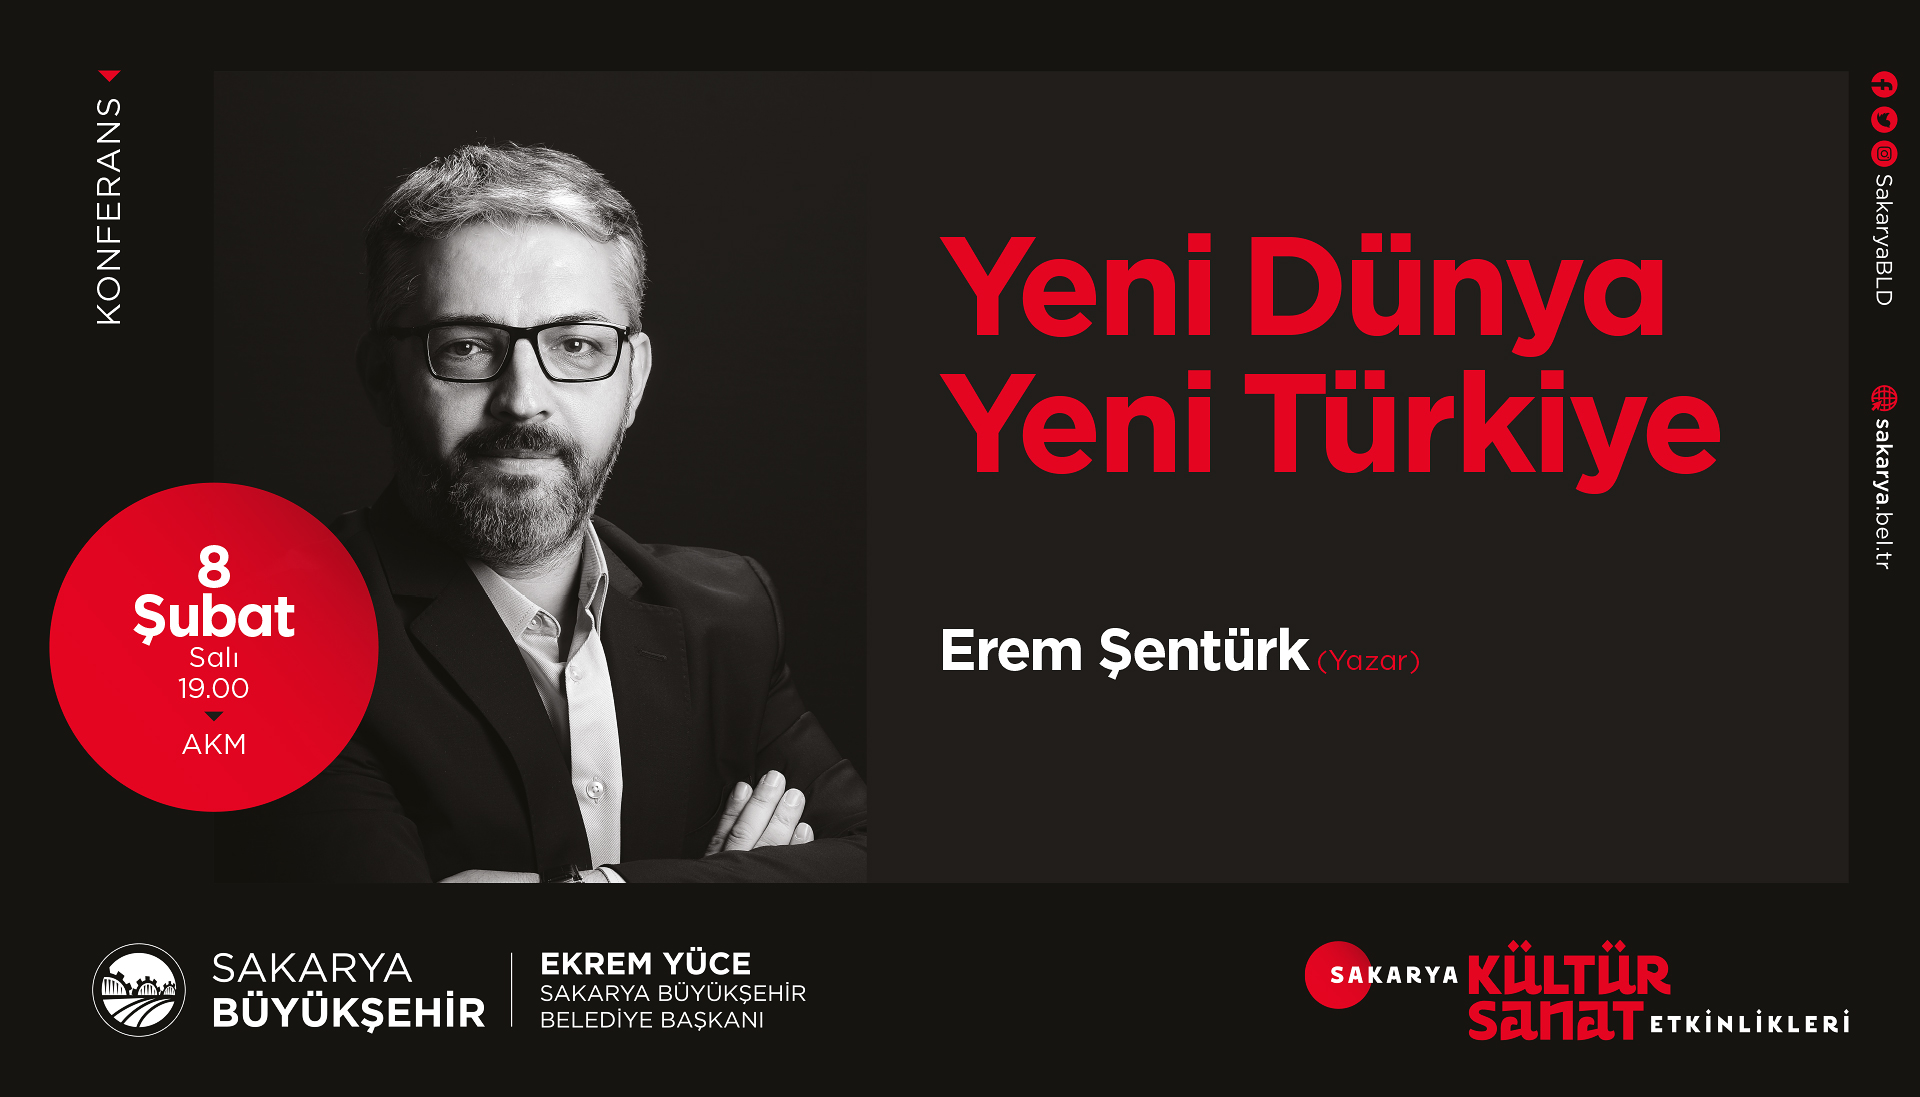 AKM’de Yeni Dünya Yeni Türkiye konuşulacak